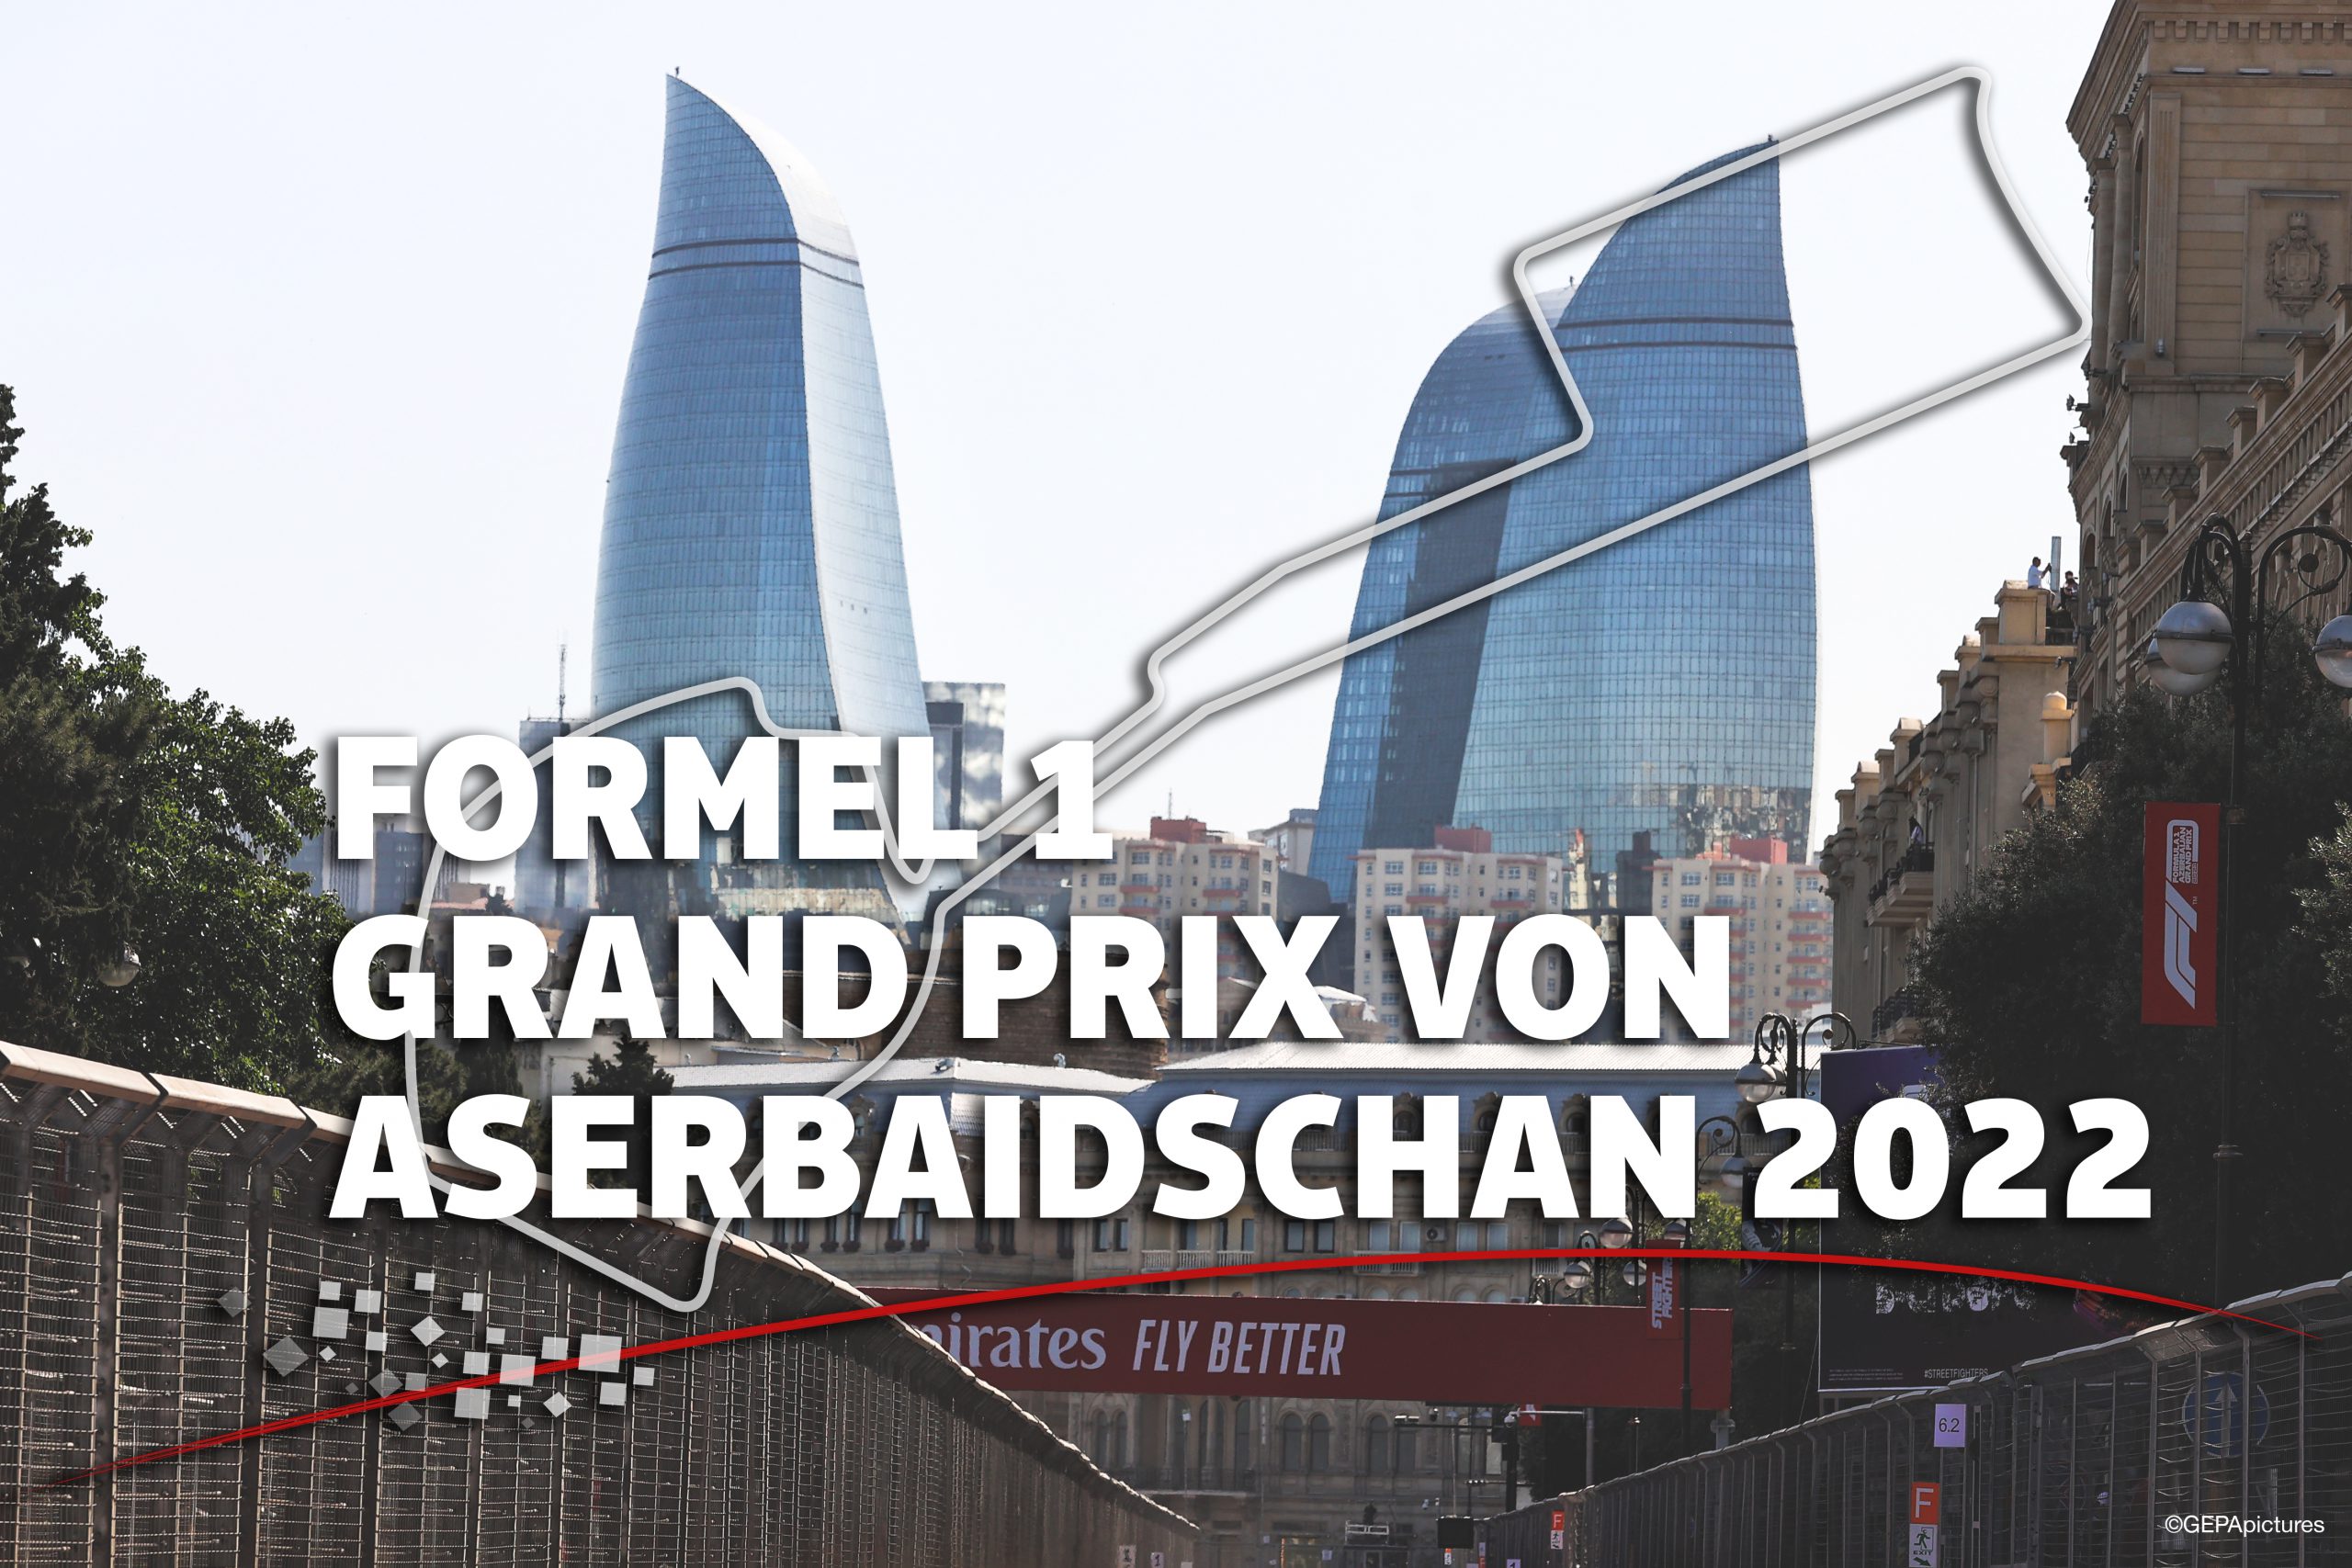 Formel 1 Grand Prix von Aserbaidschan